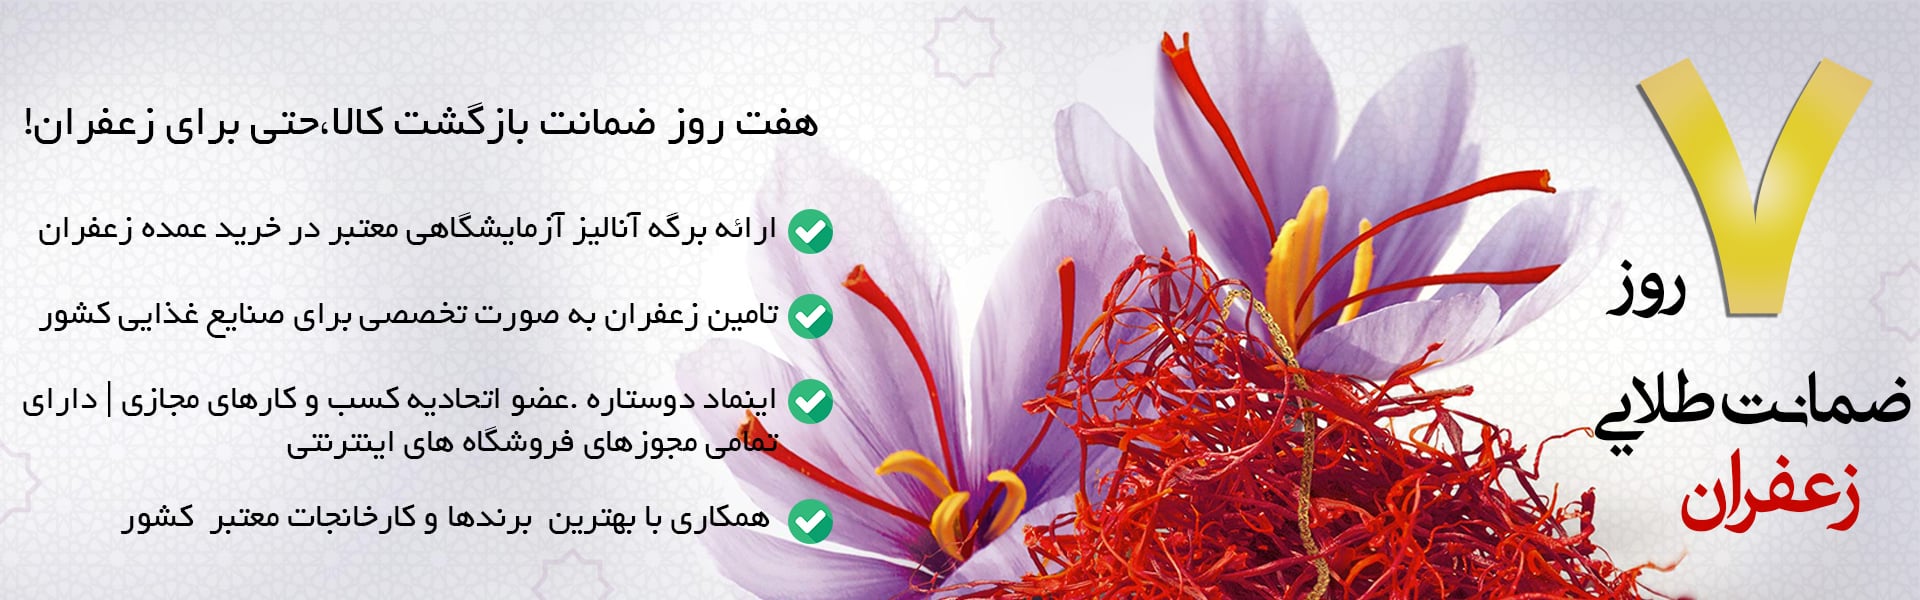 خرید عمده زعفران فله در بازار تهران و خرید زعفران عمده در تهران